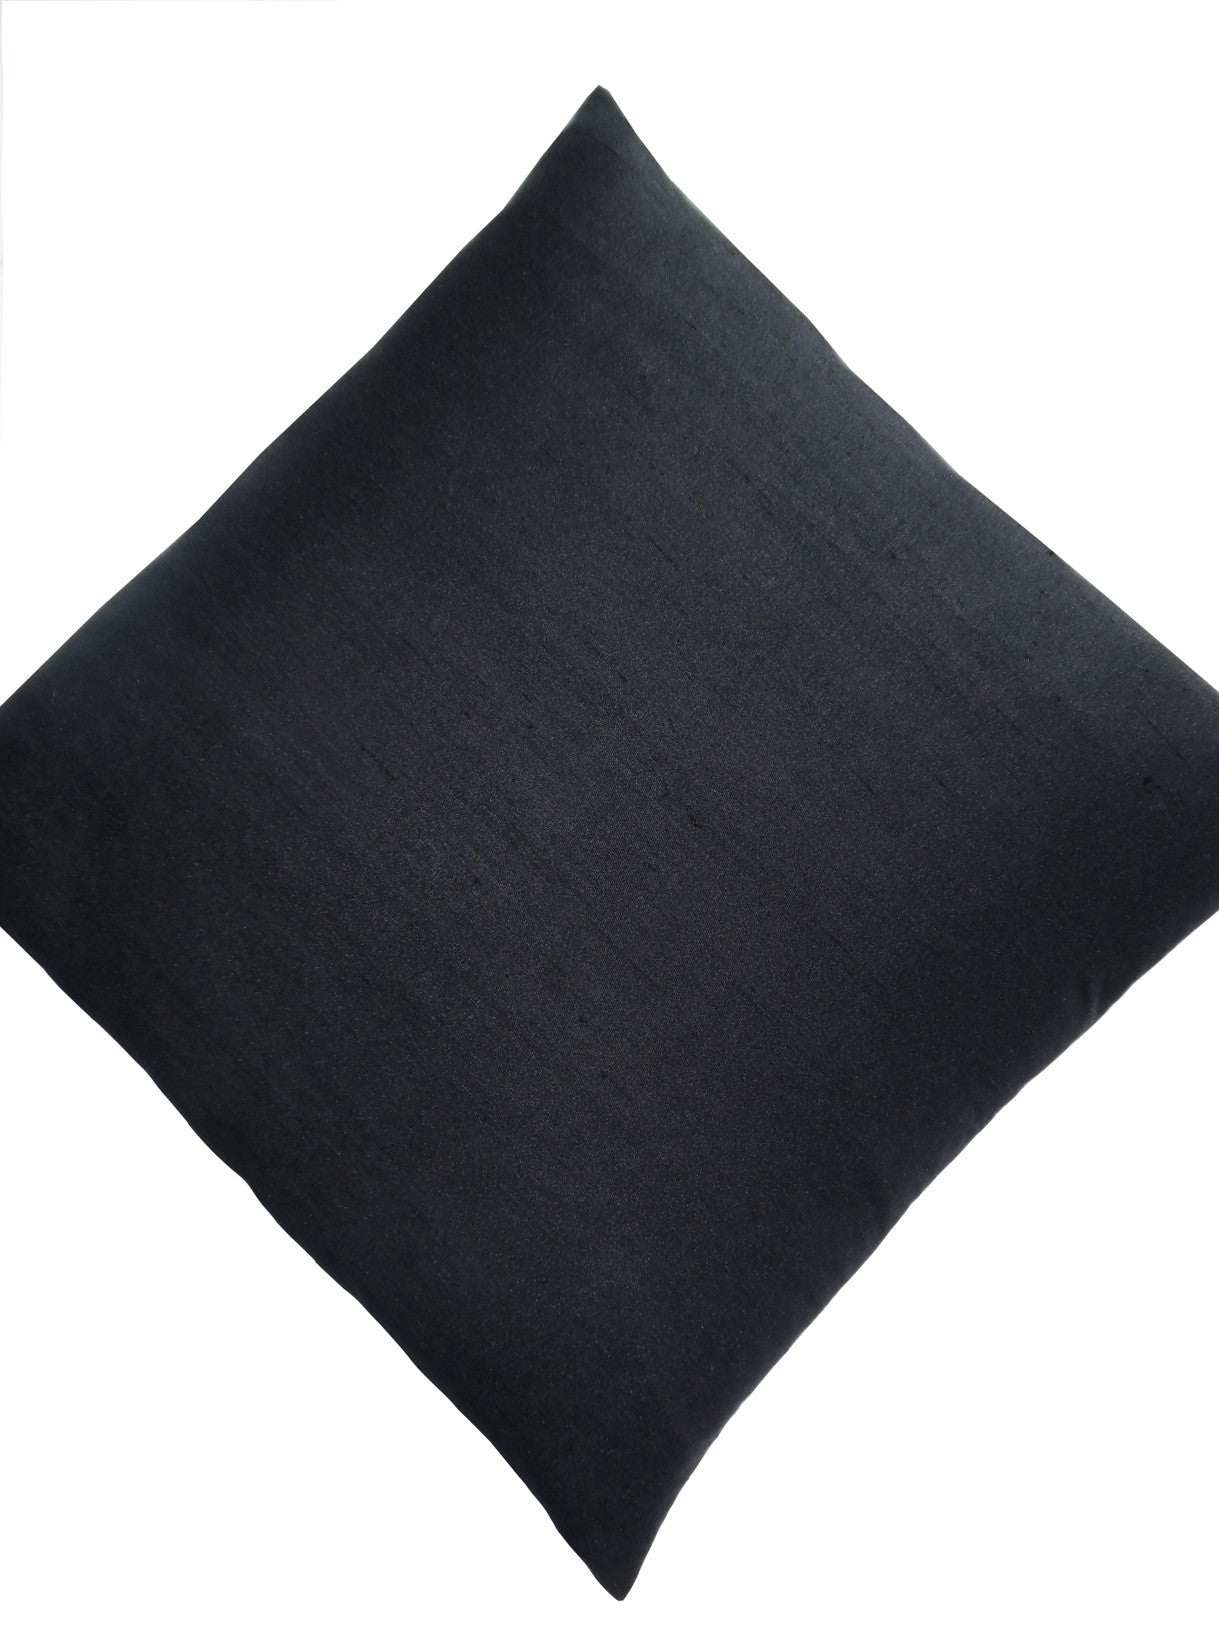 Thai Silk Solid Pillow Black